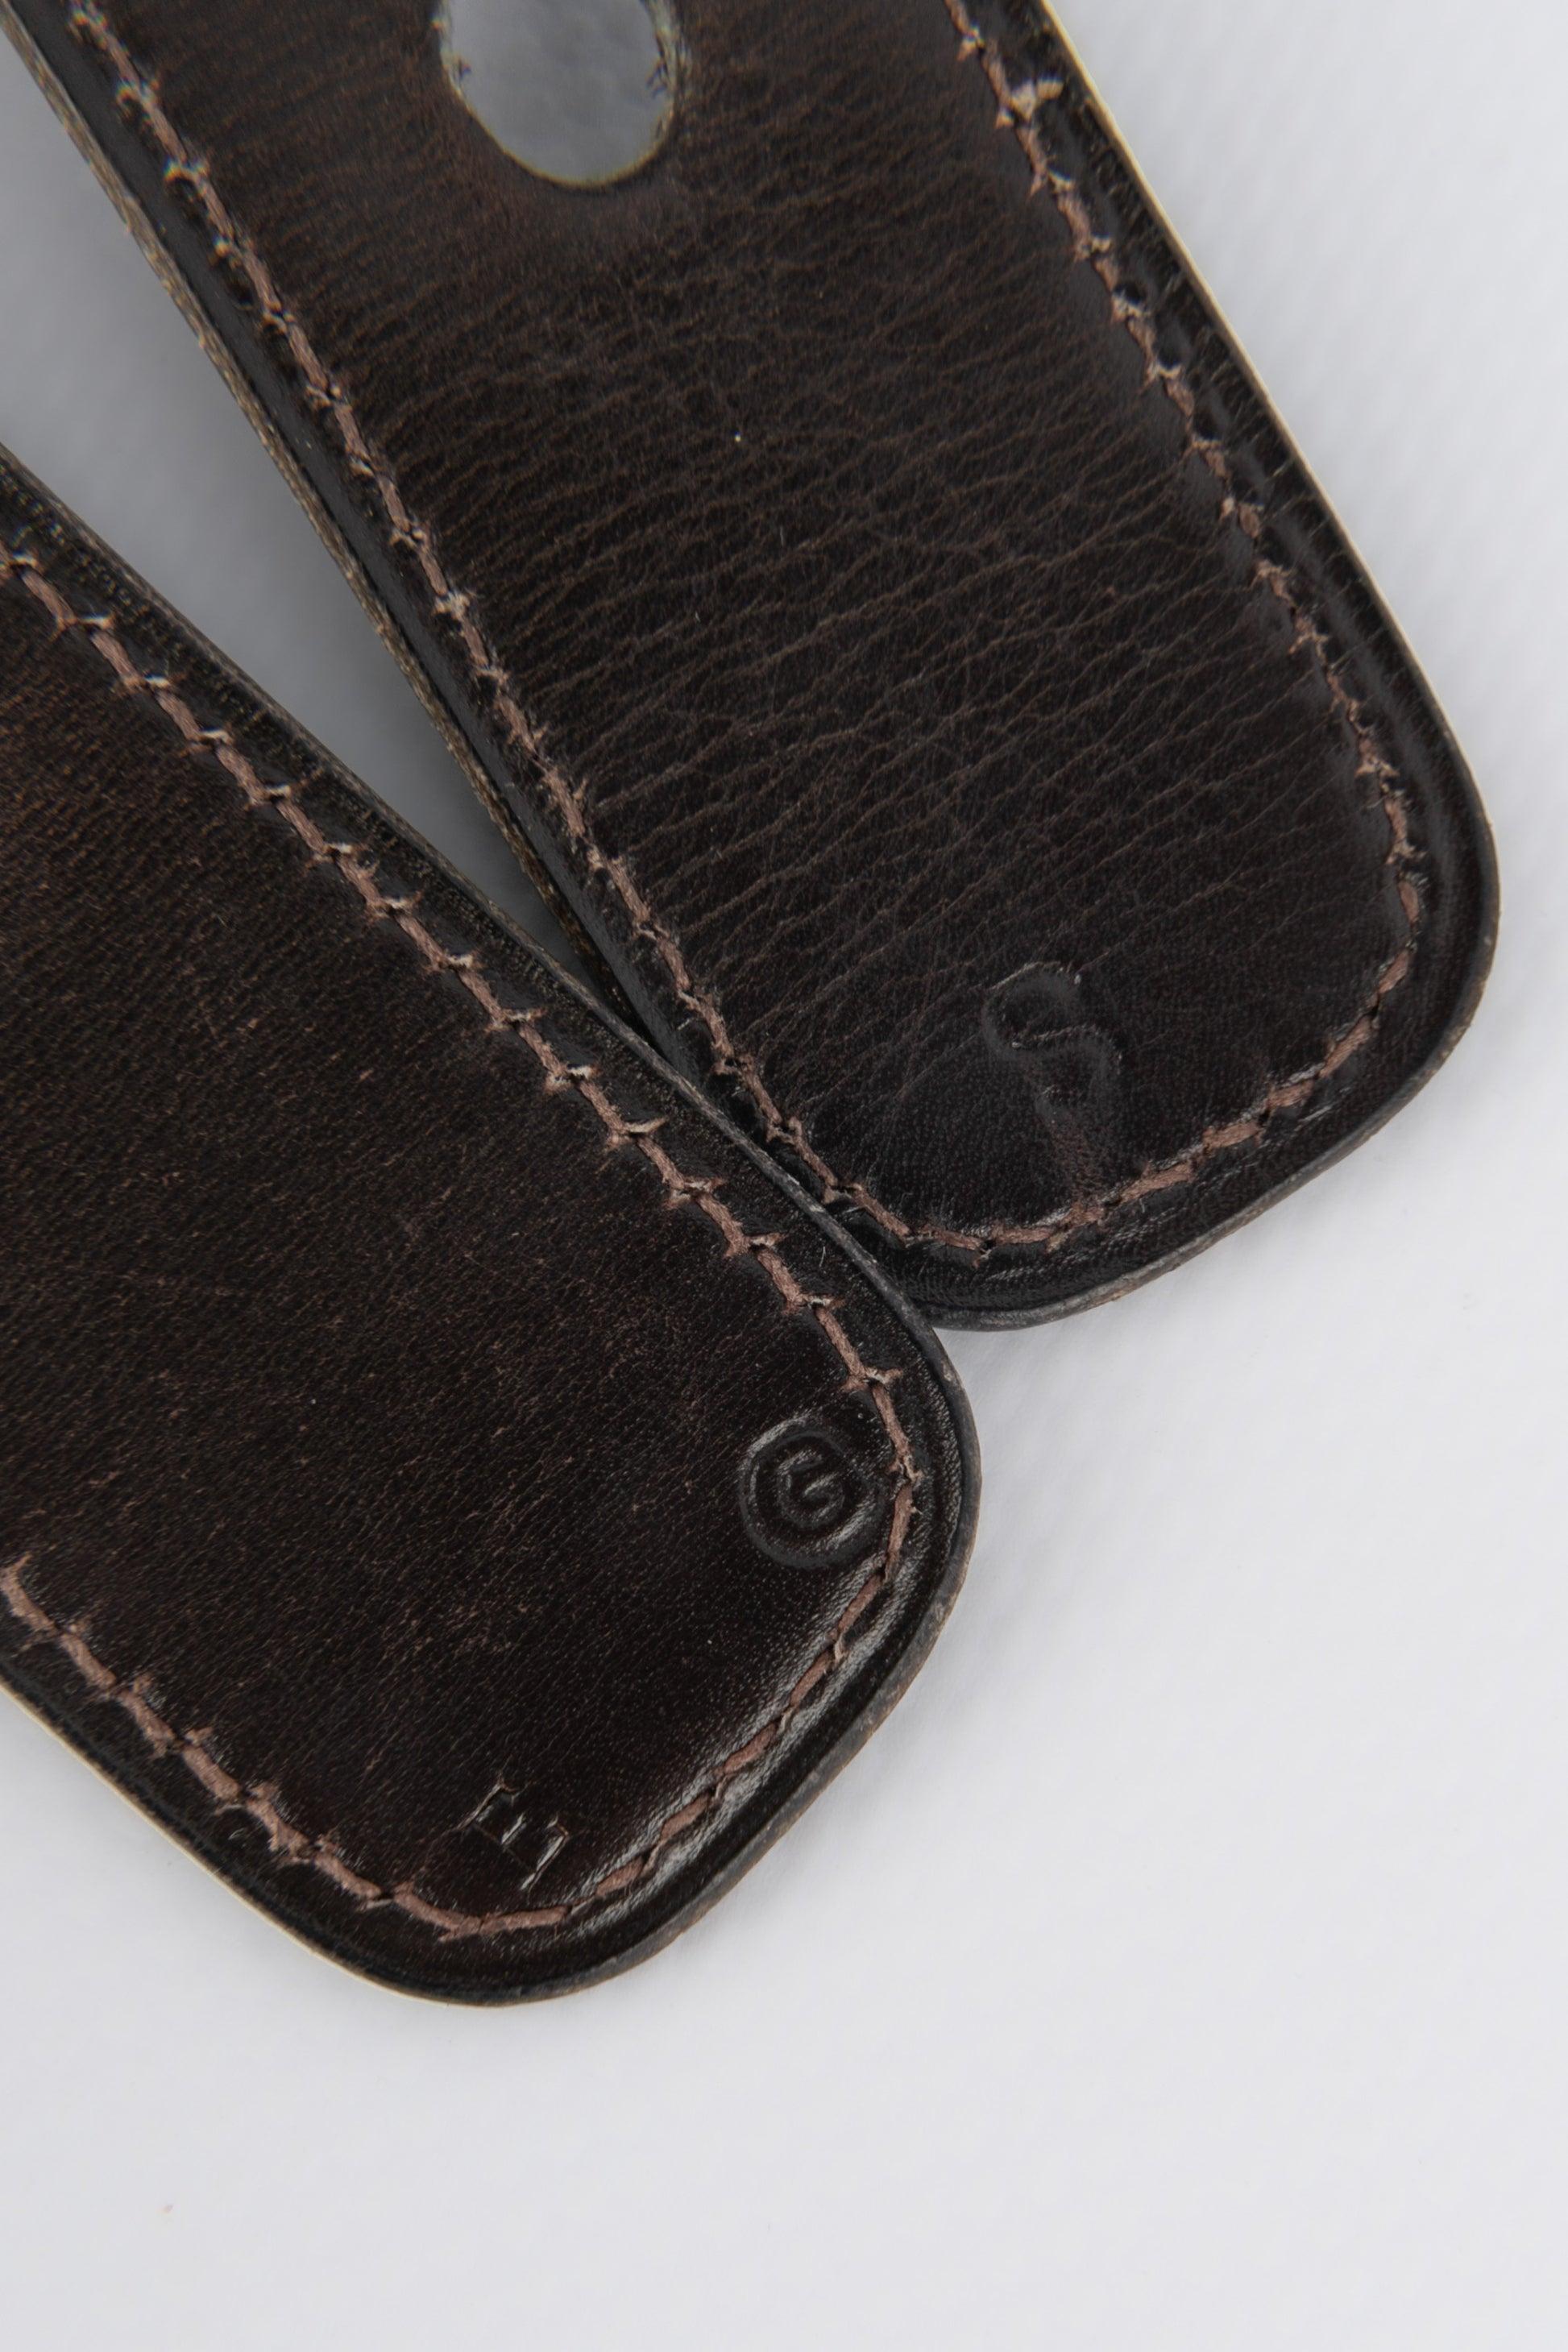 Hermès Brown Leather Belt For Sale 1